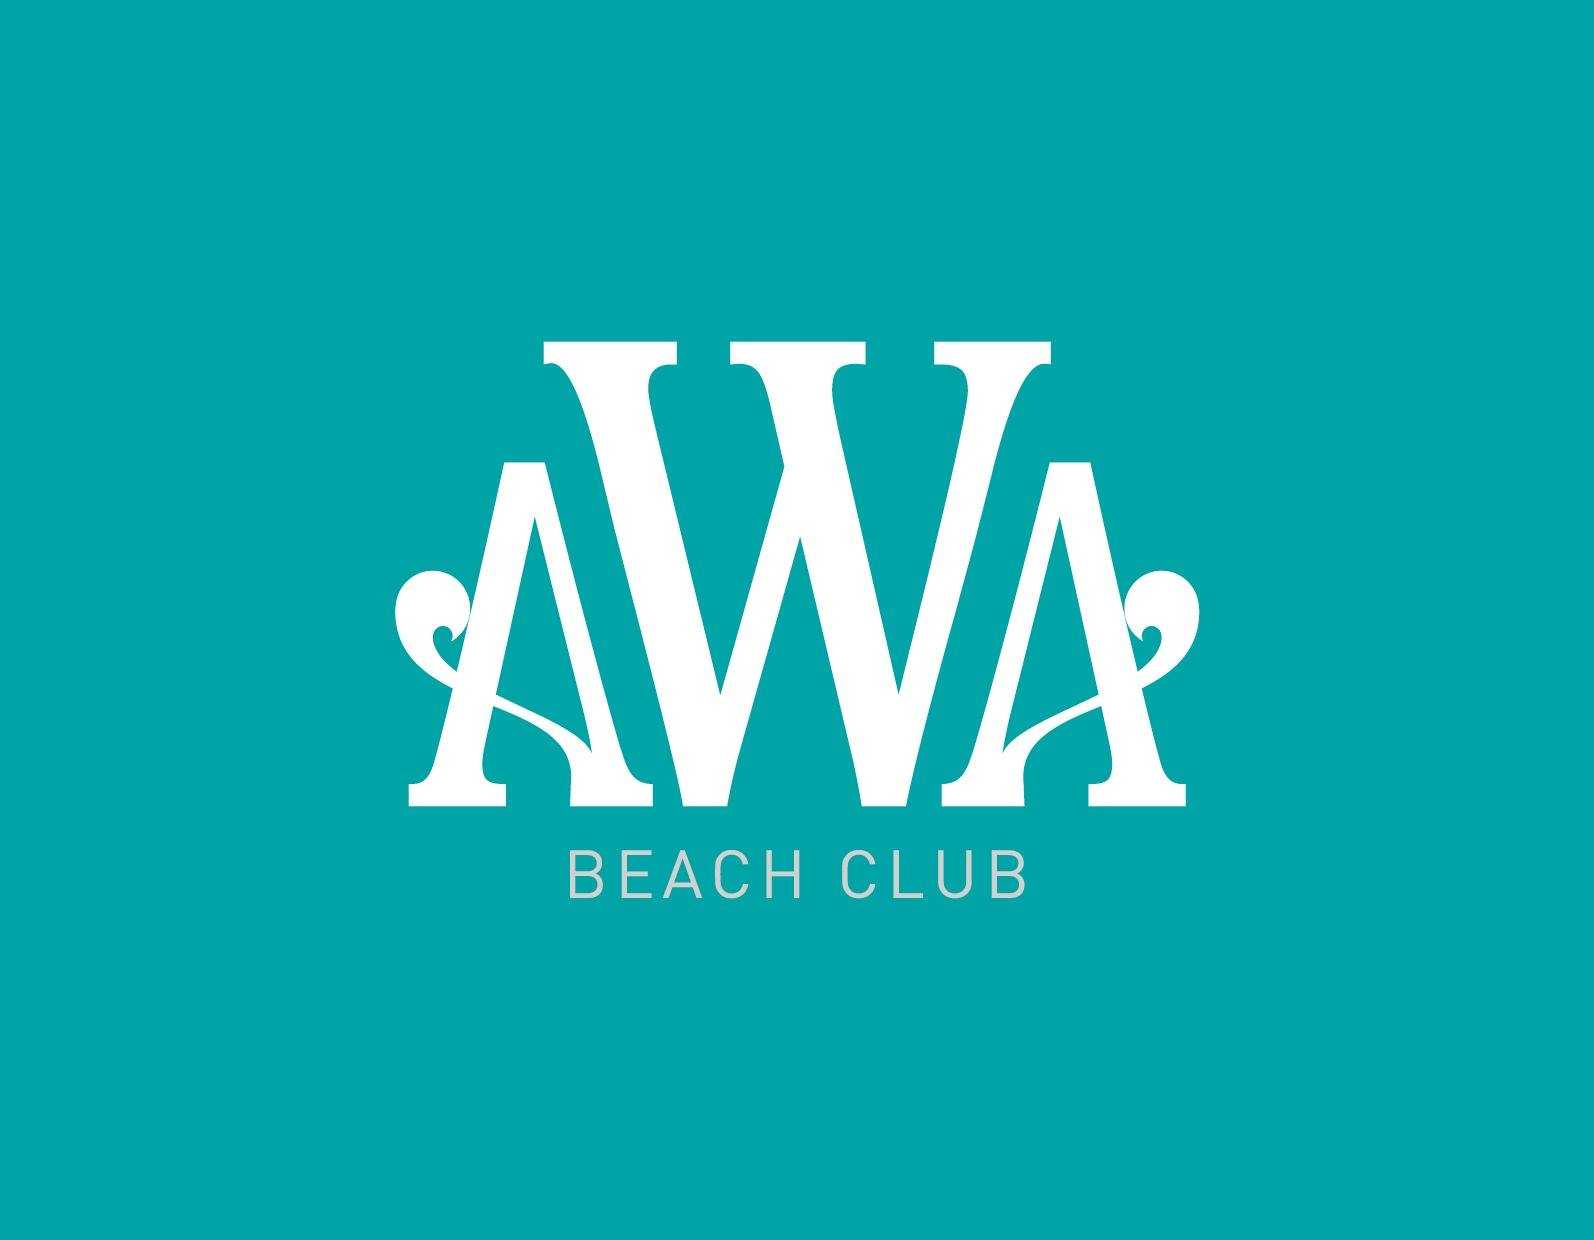 Awa beach club